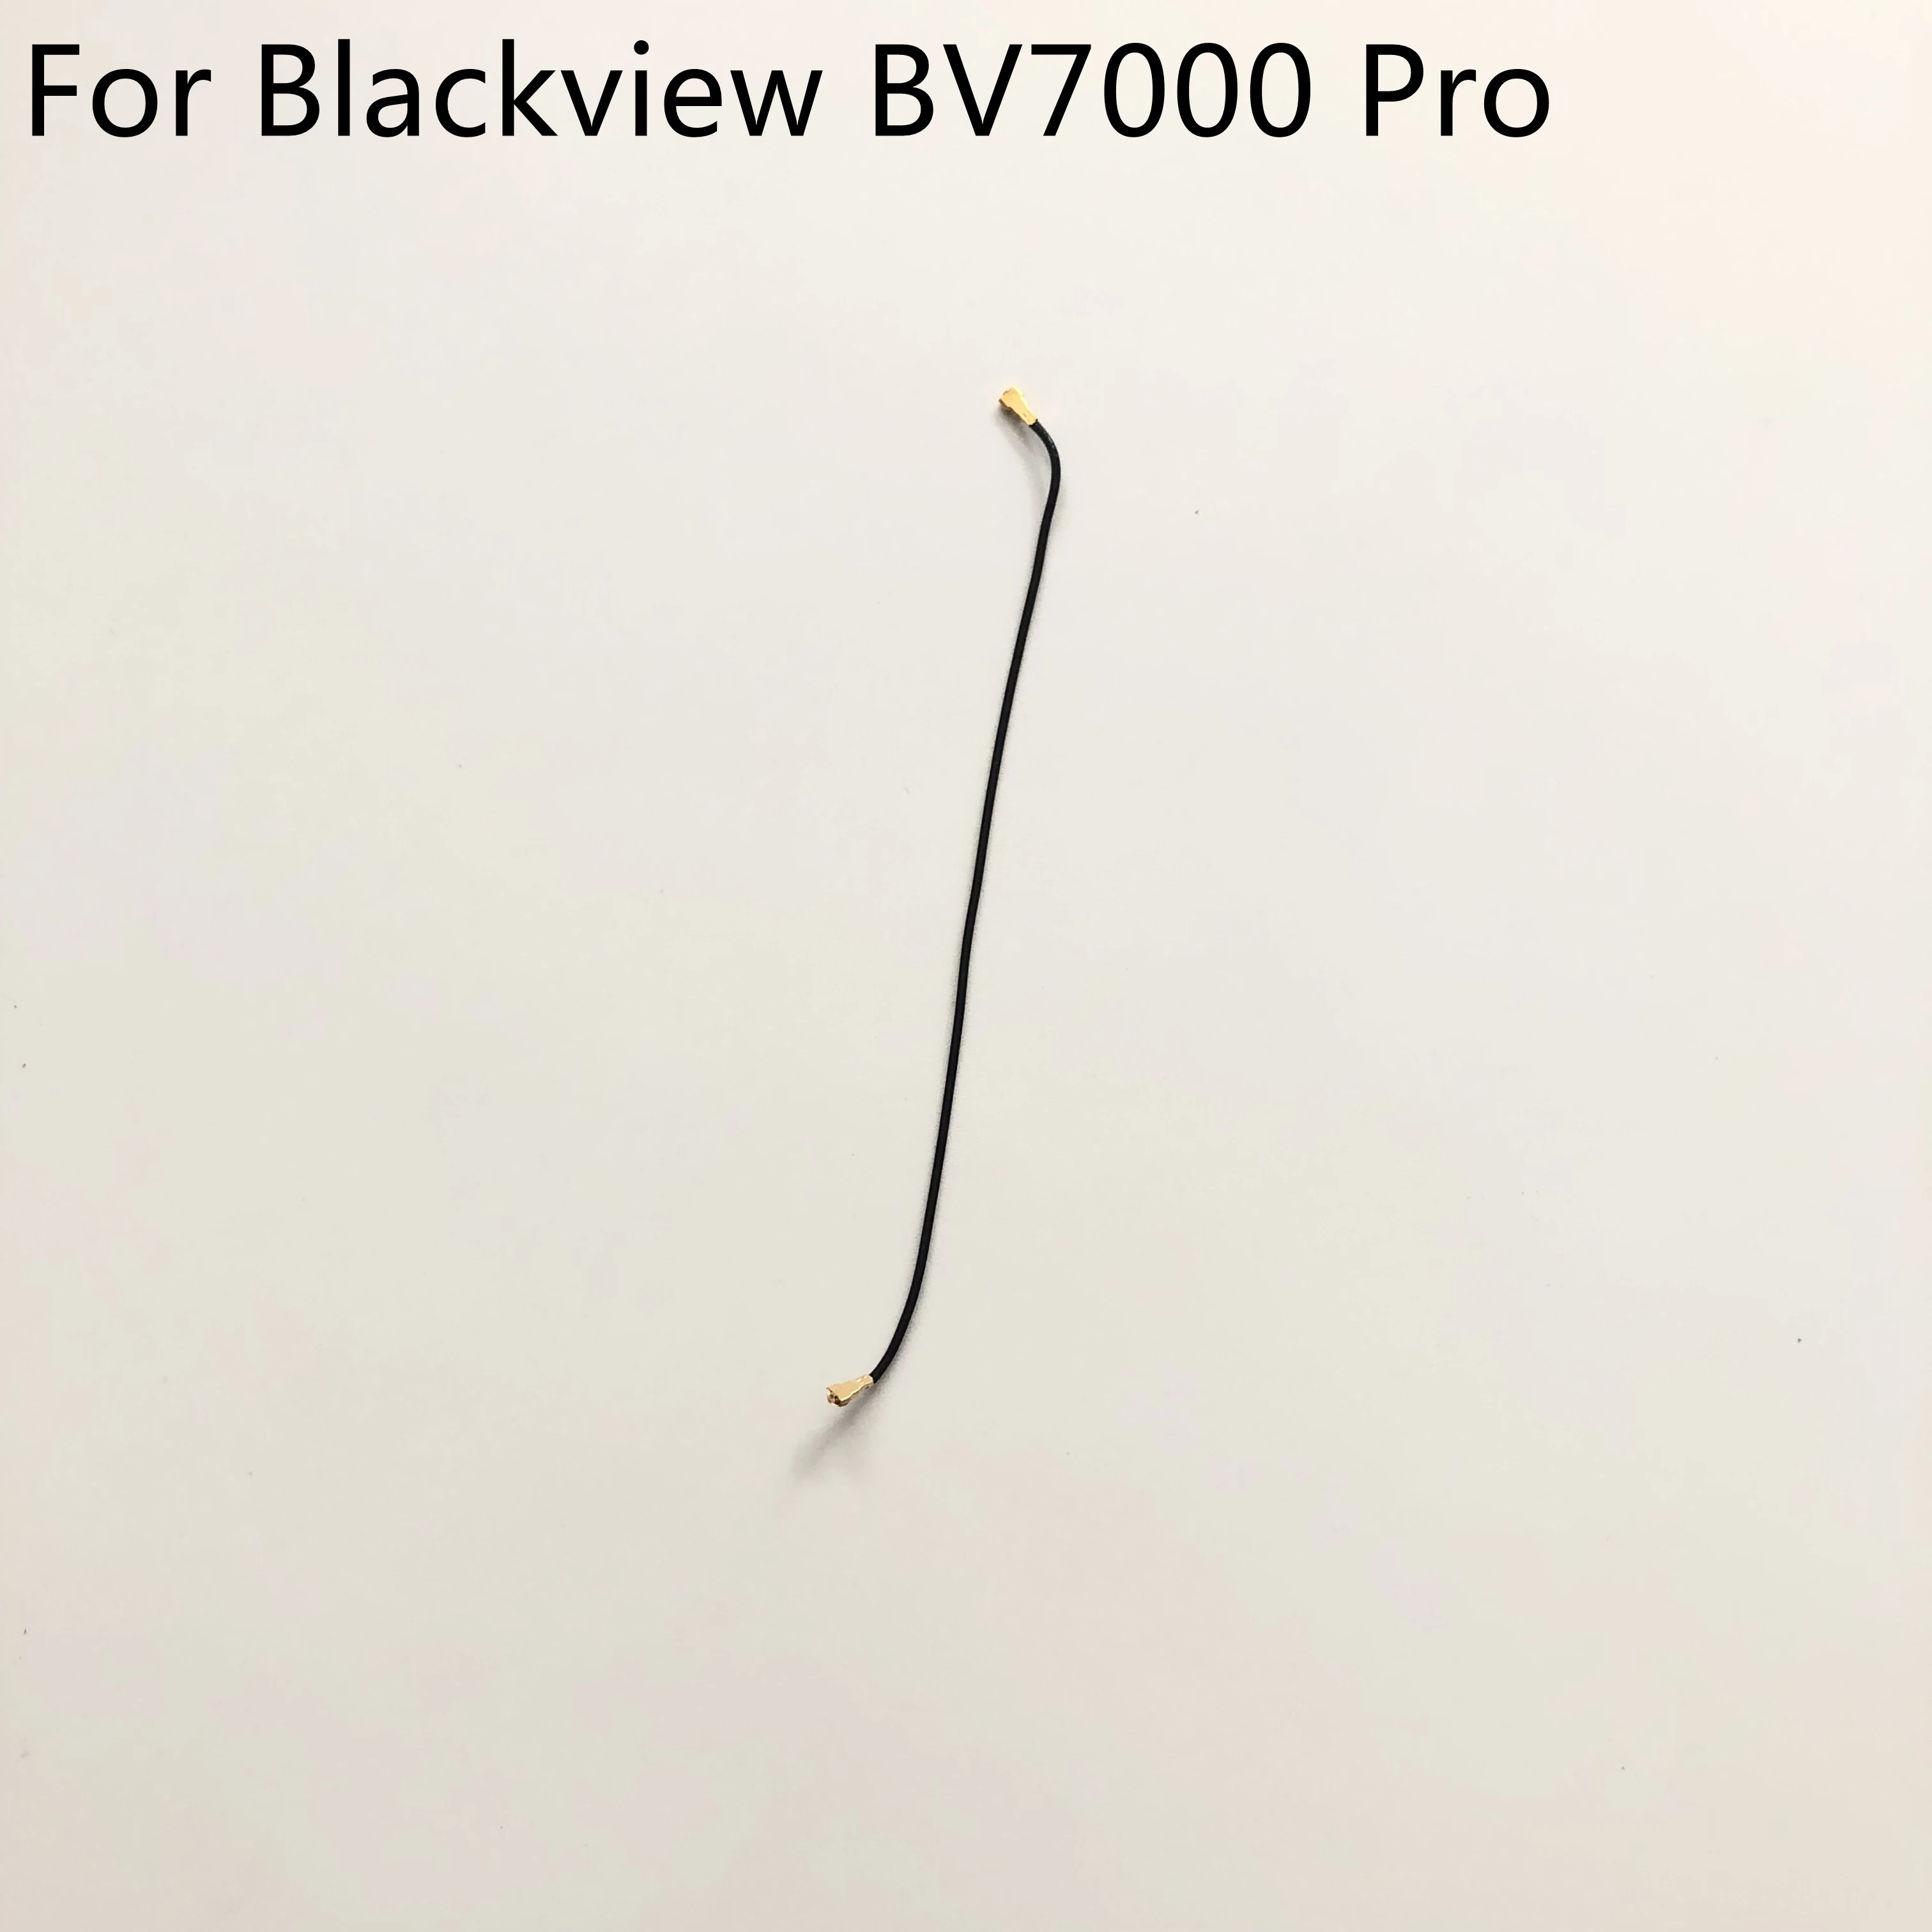 Kullanılan Telefon Koaksiyel Sinyal Kablosu Blackview BV7000 Pro MTK6750 Octa Çekirdek 5.0 inç 1920x1080 Akıllı Telefon